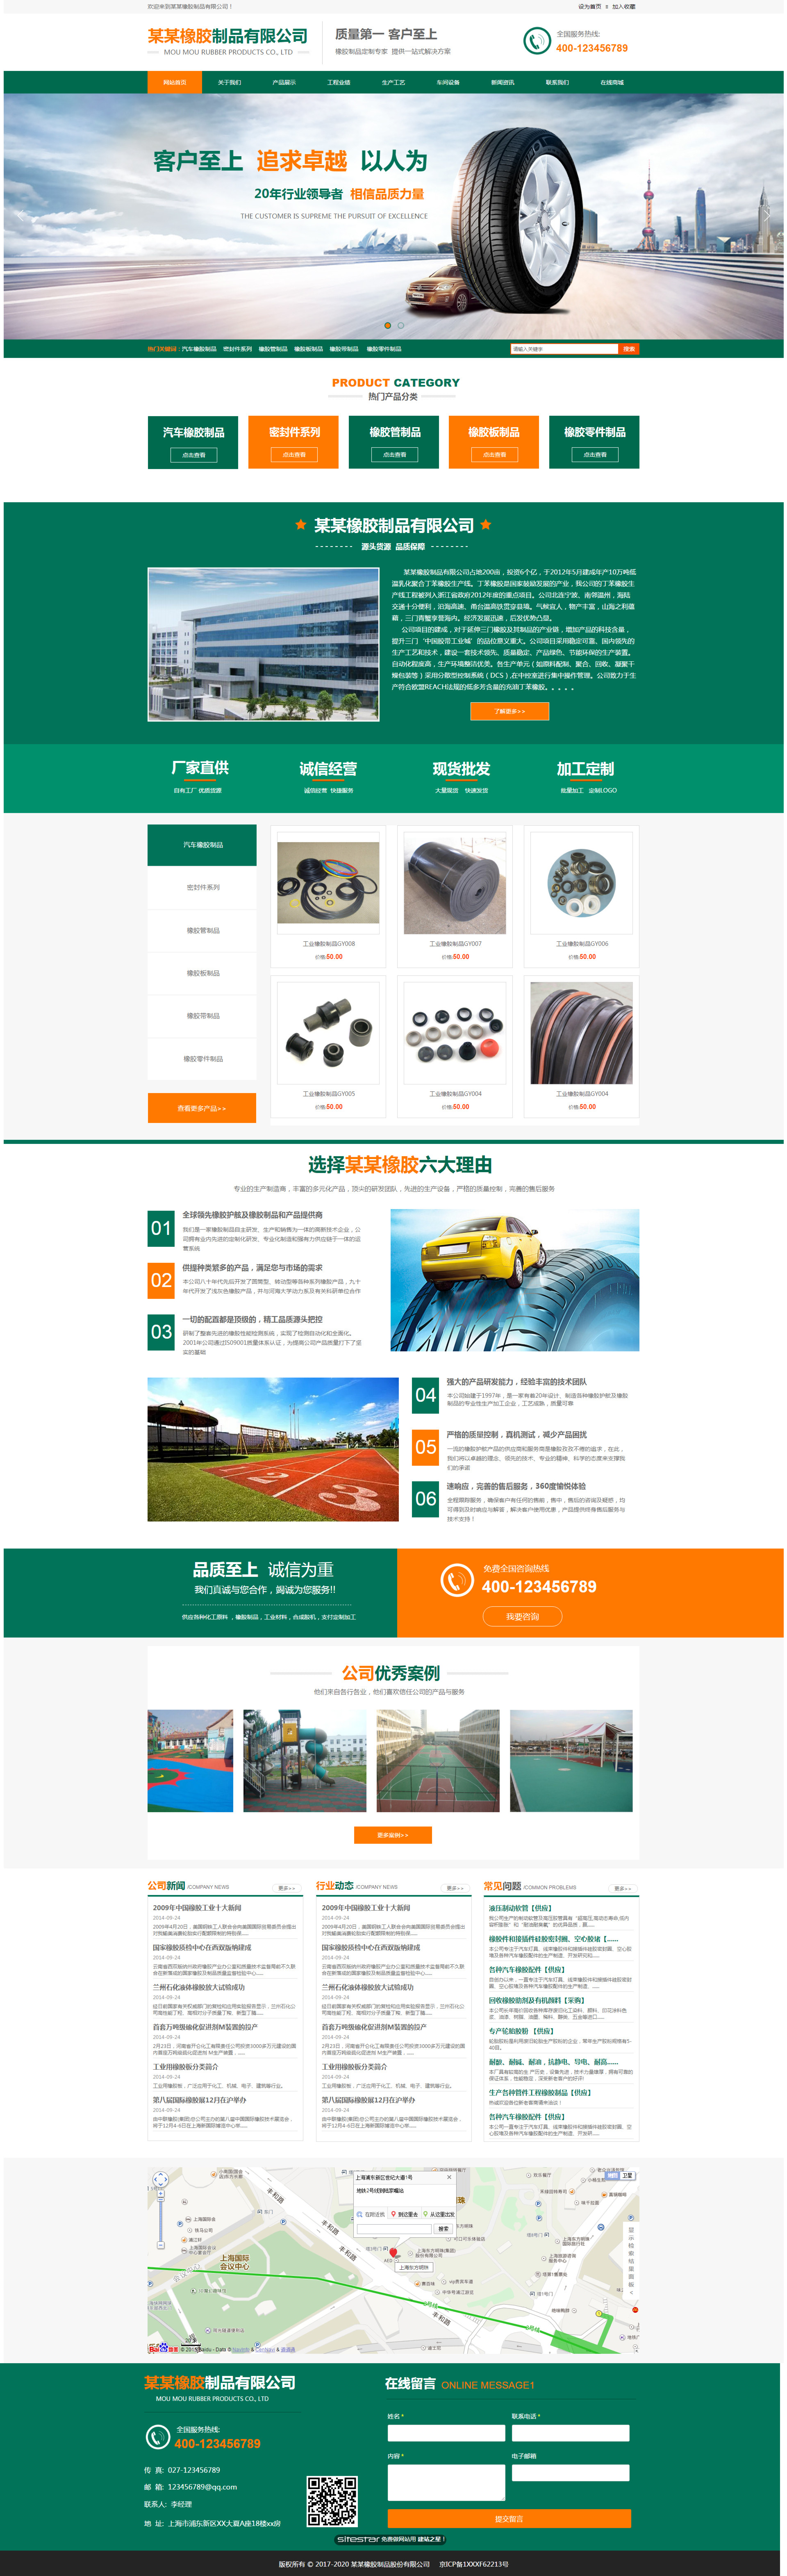 企业网站精美模板-rubber-1049030